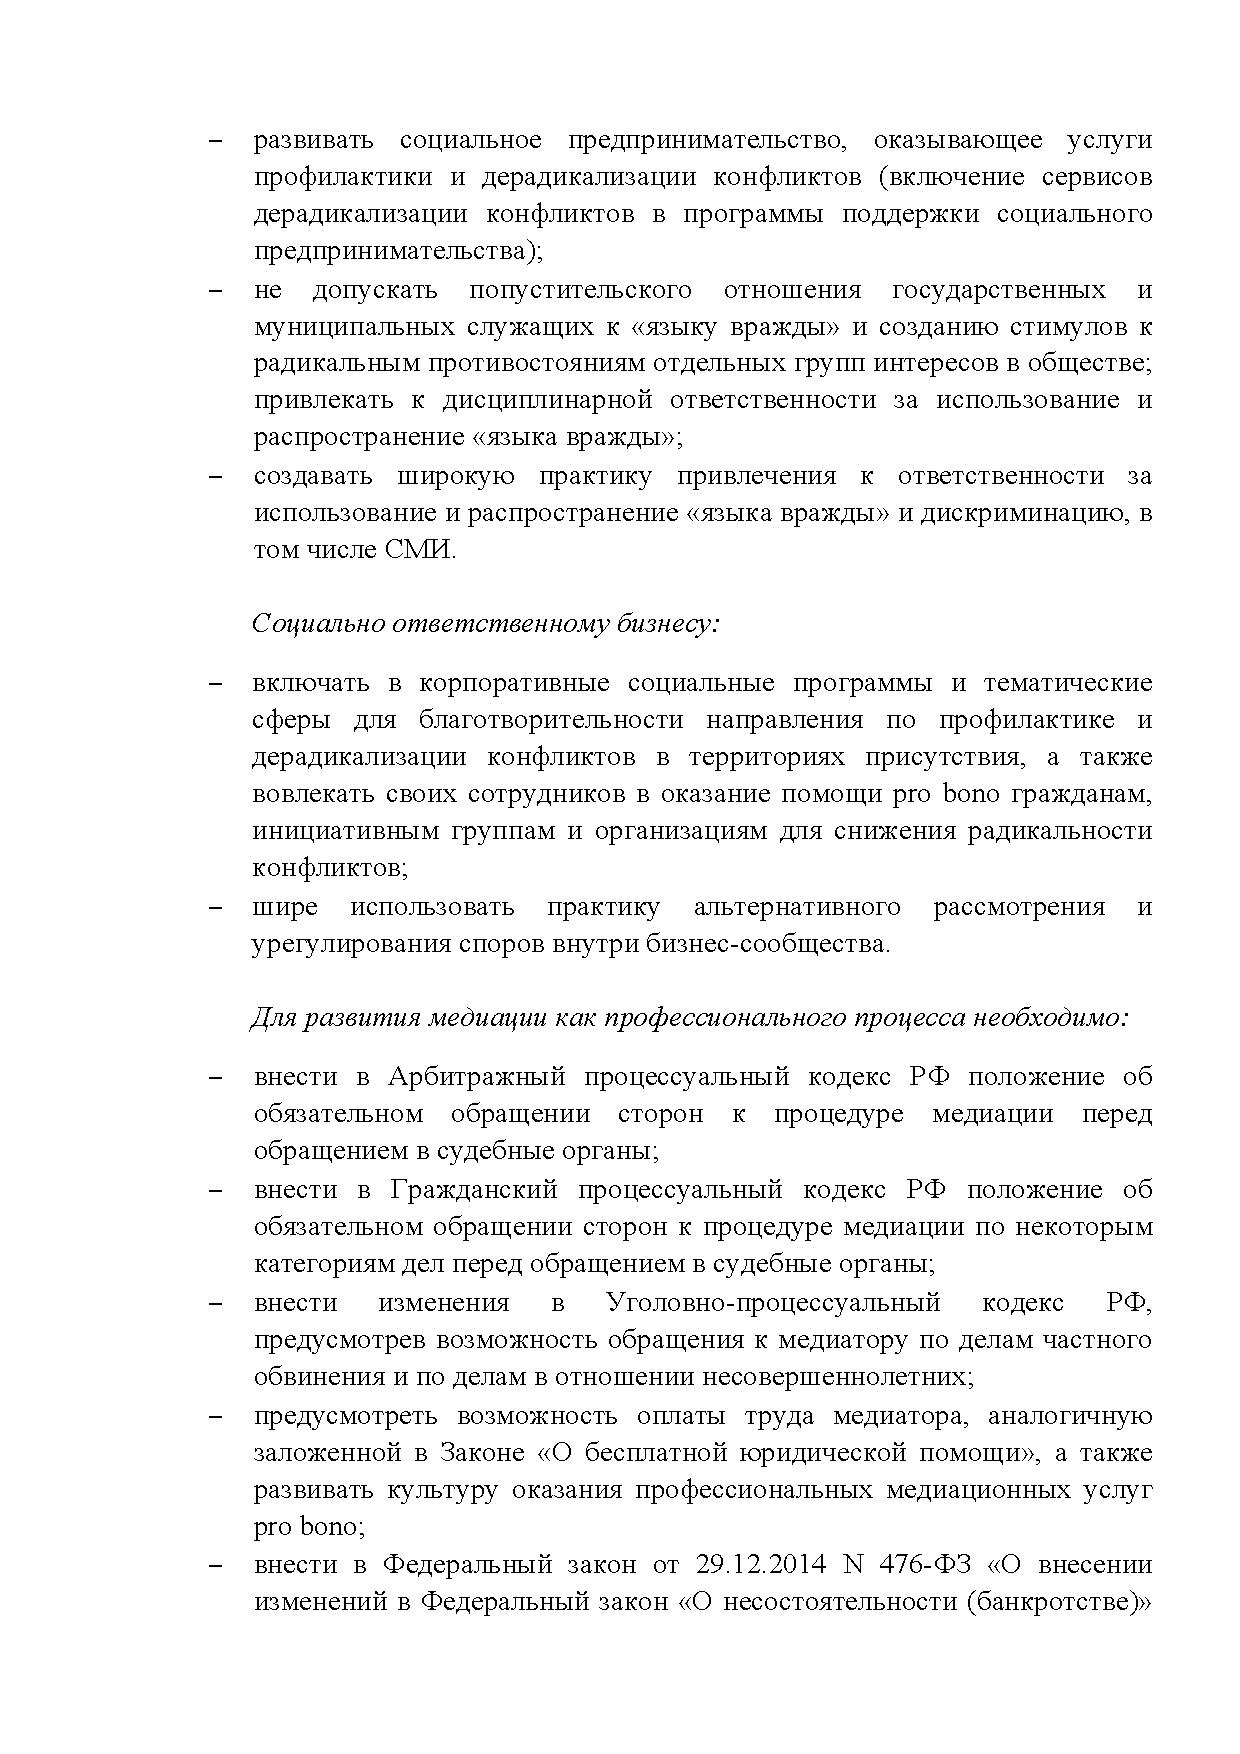  Опубликованы Предложения Общероссийского гражданского форума 2015 - фото 19